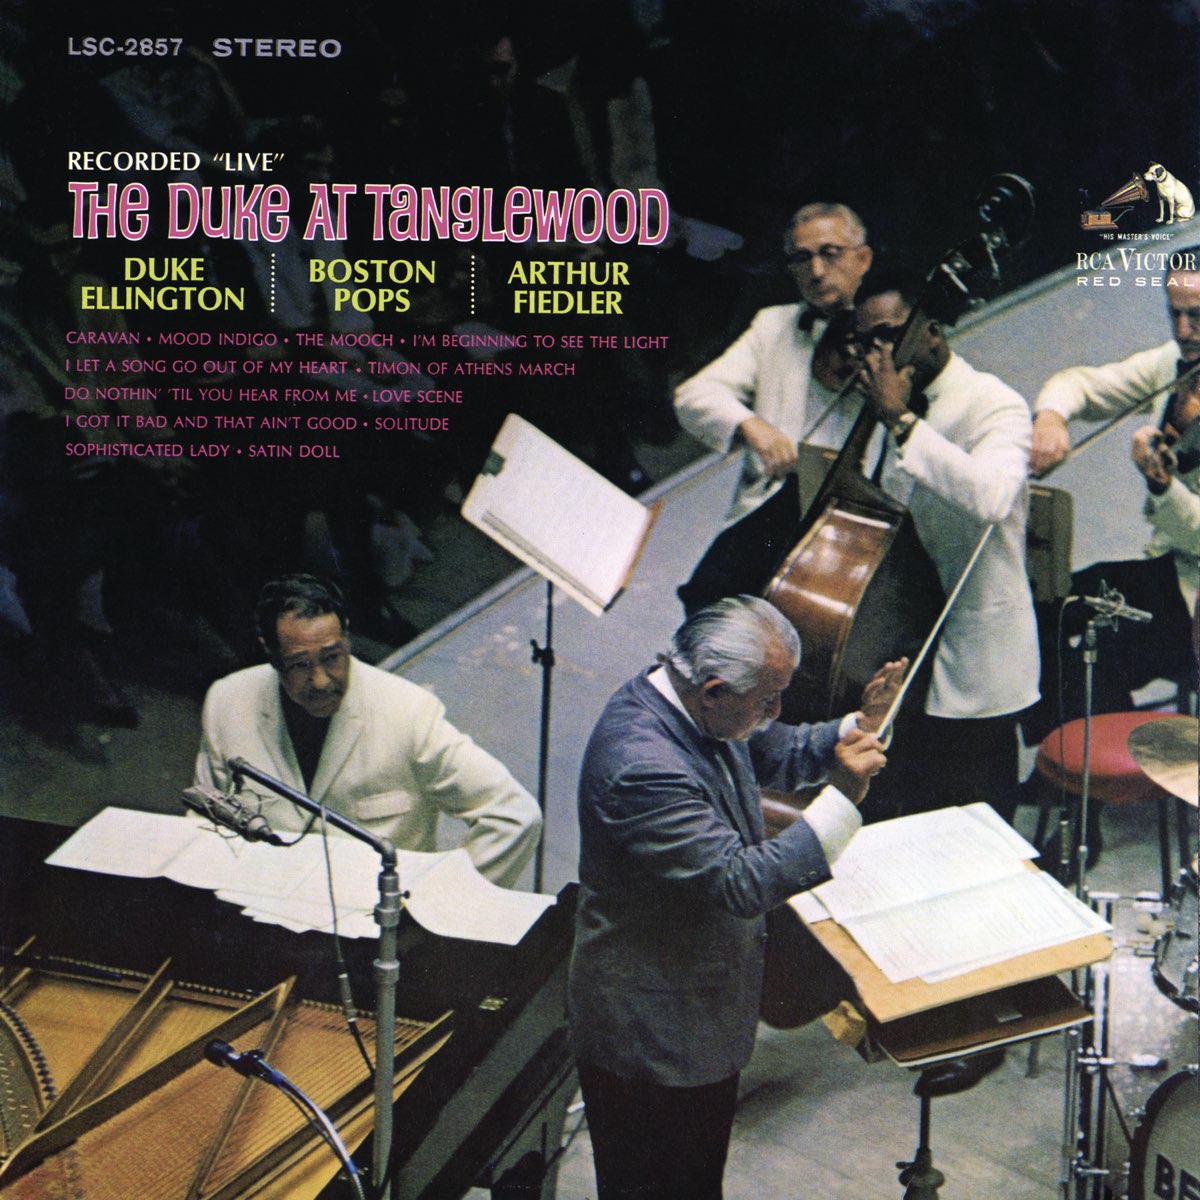 The Duke at Tanglewood - Album by Duke Ellington - Apple Music